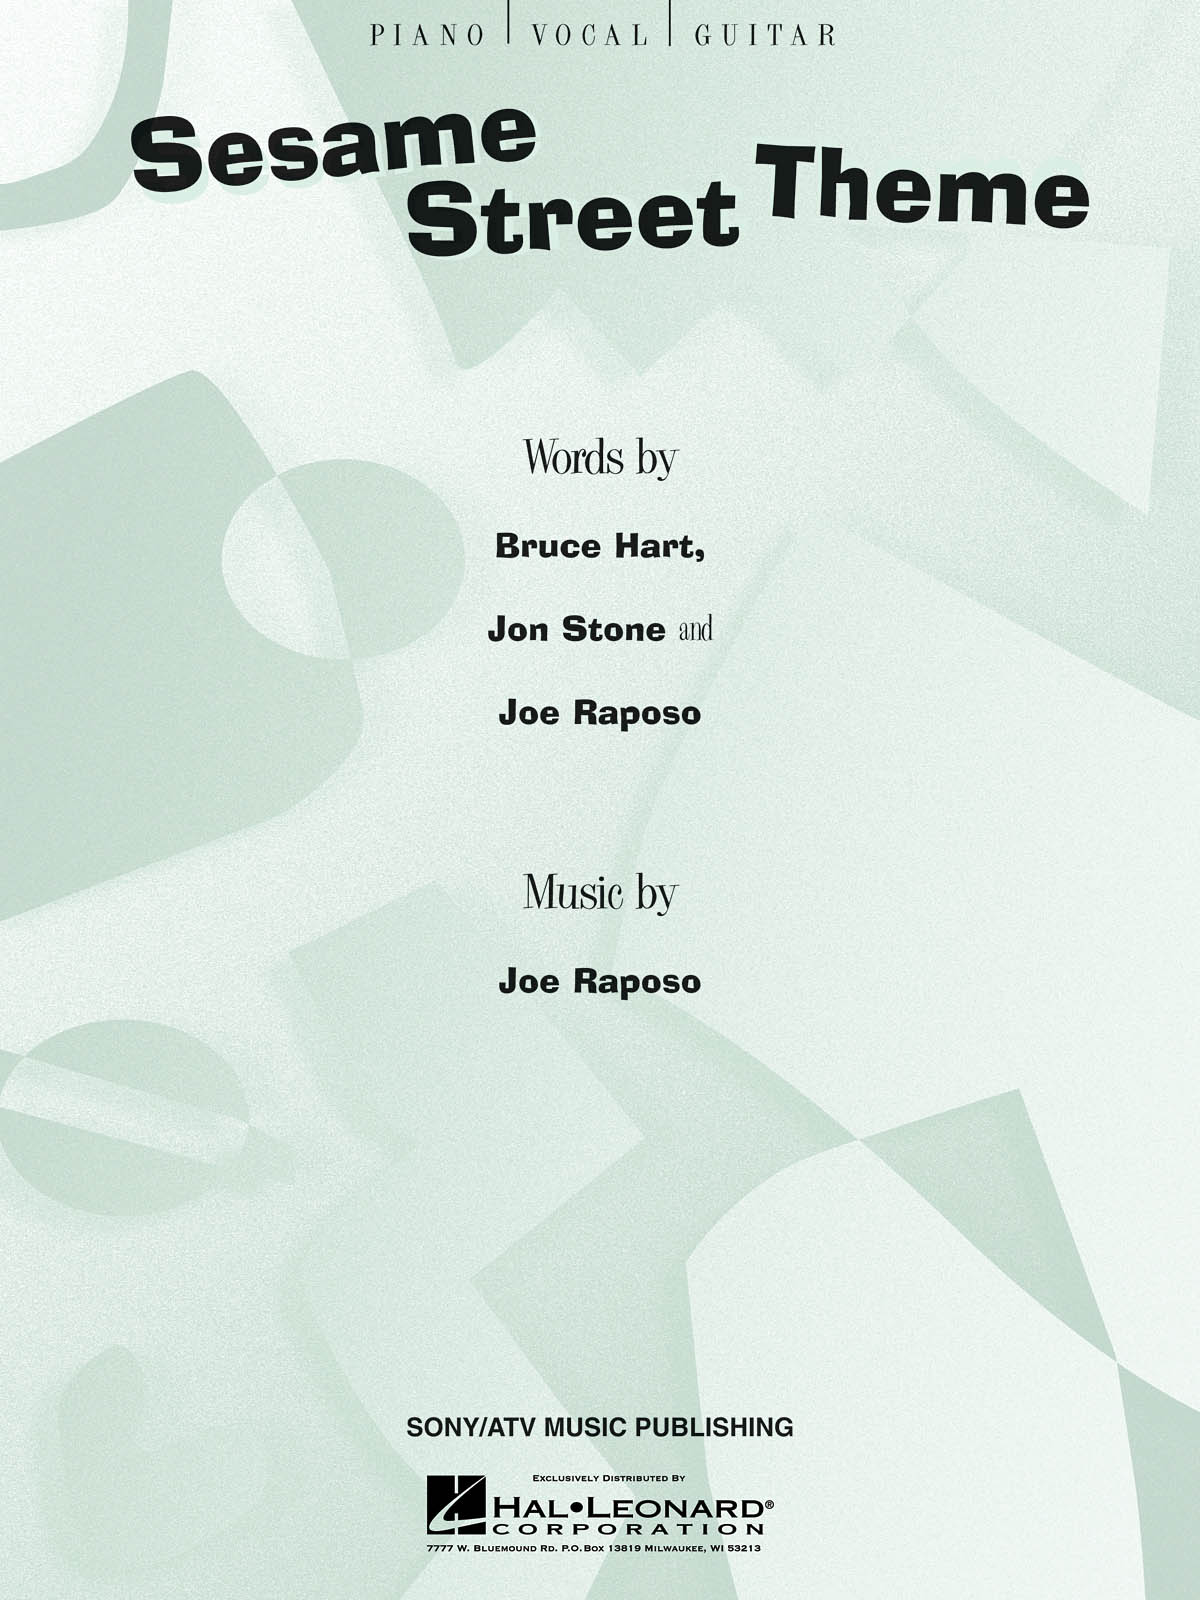 Sesame Street Theme - noty pro zpěv, klavír s akordy pro kytaru